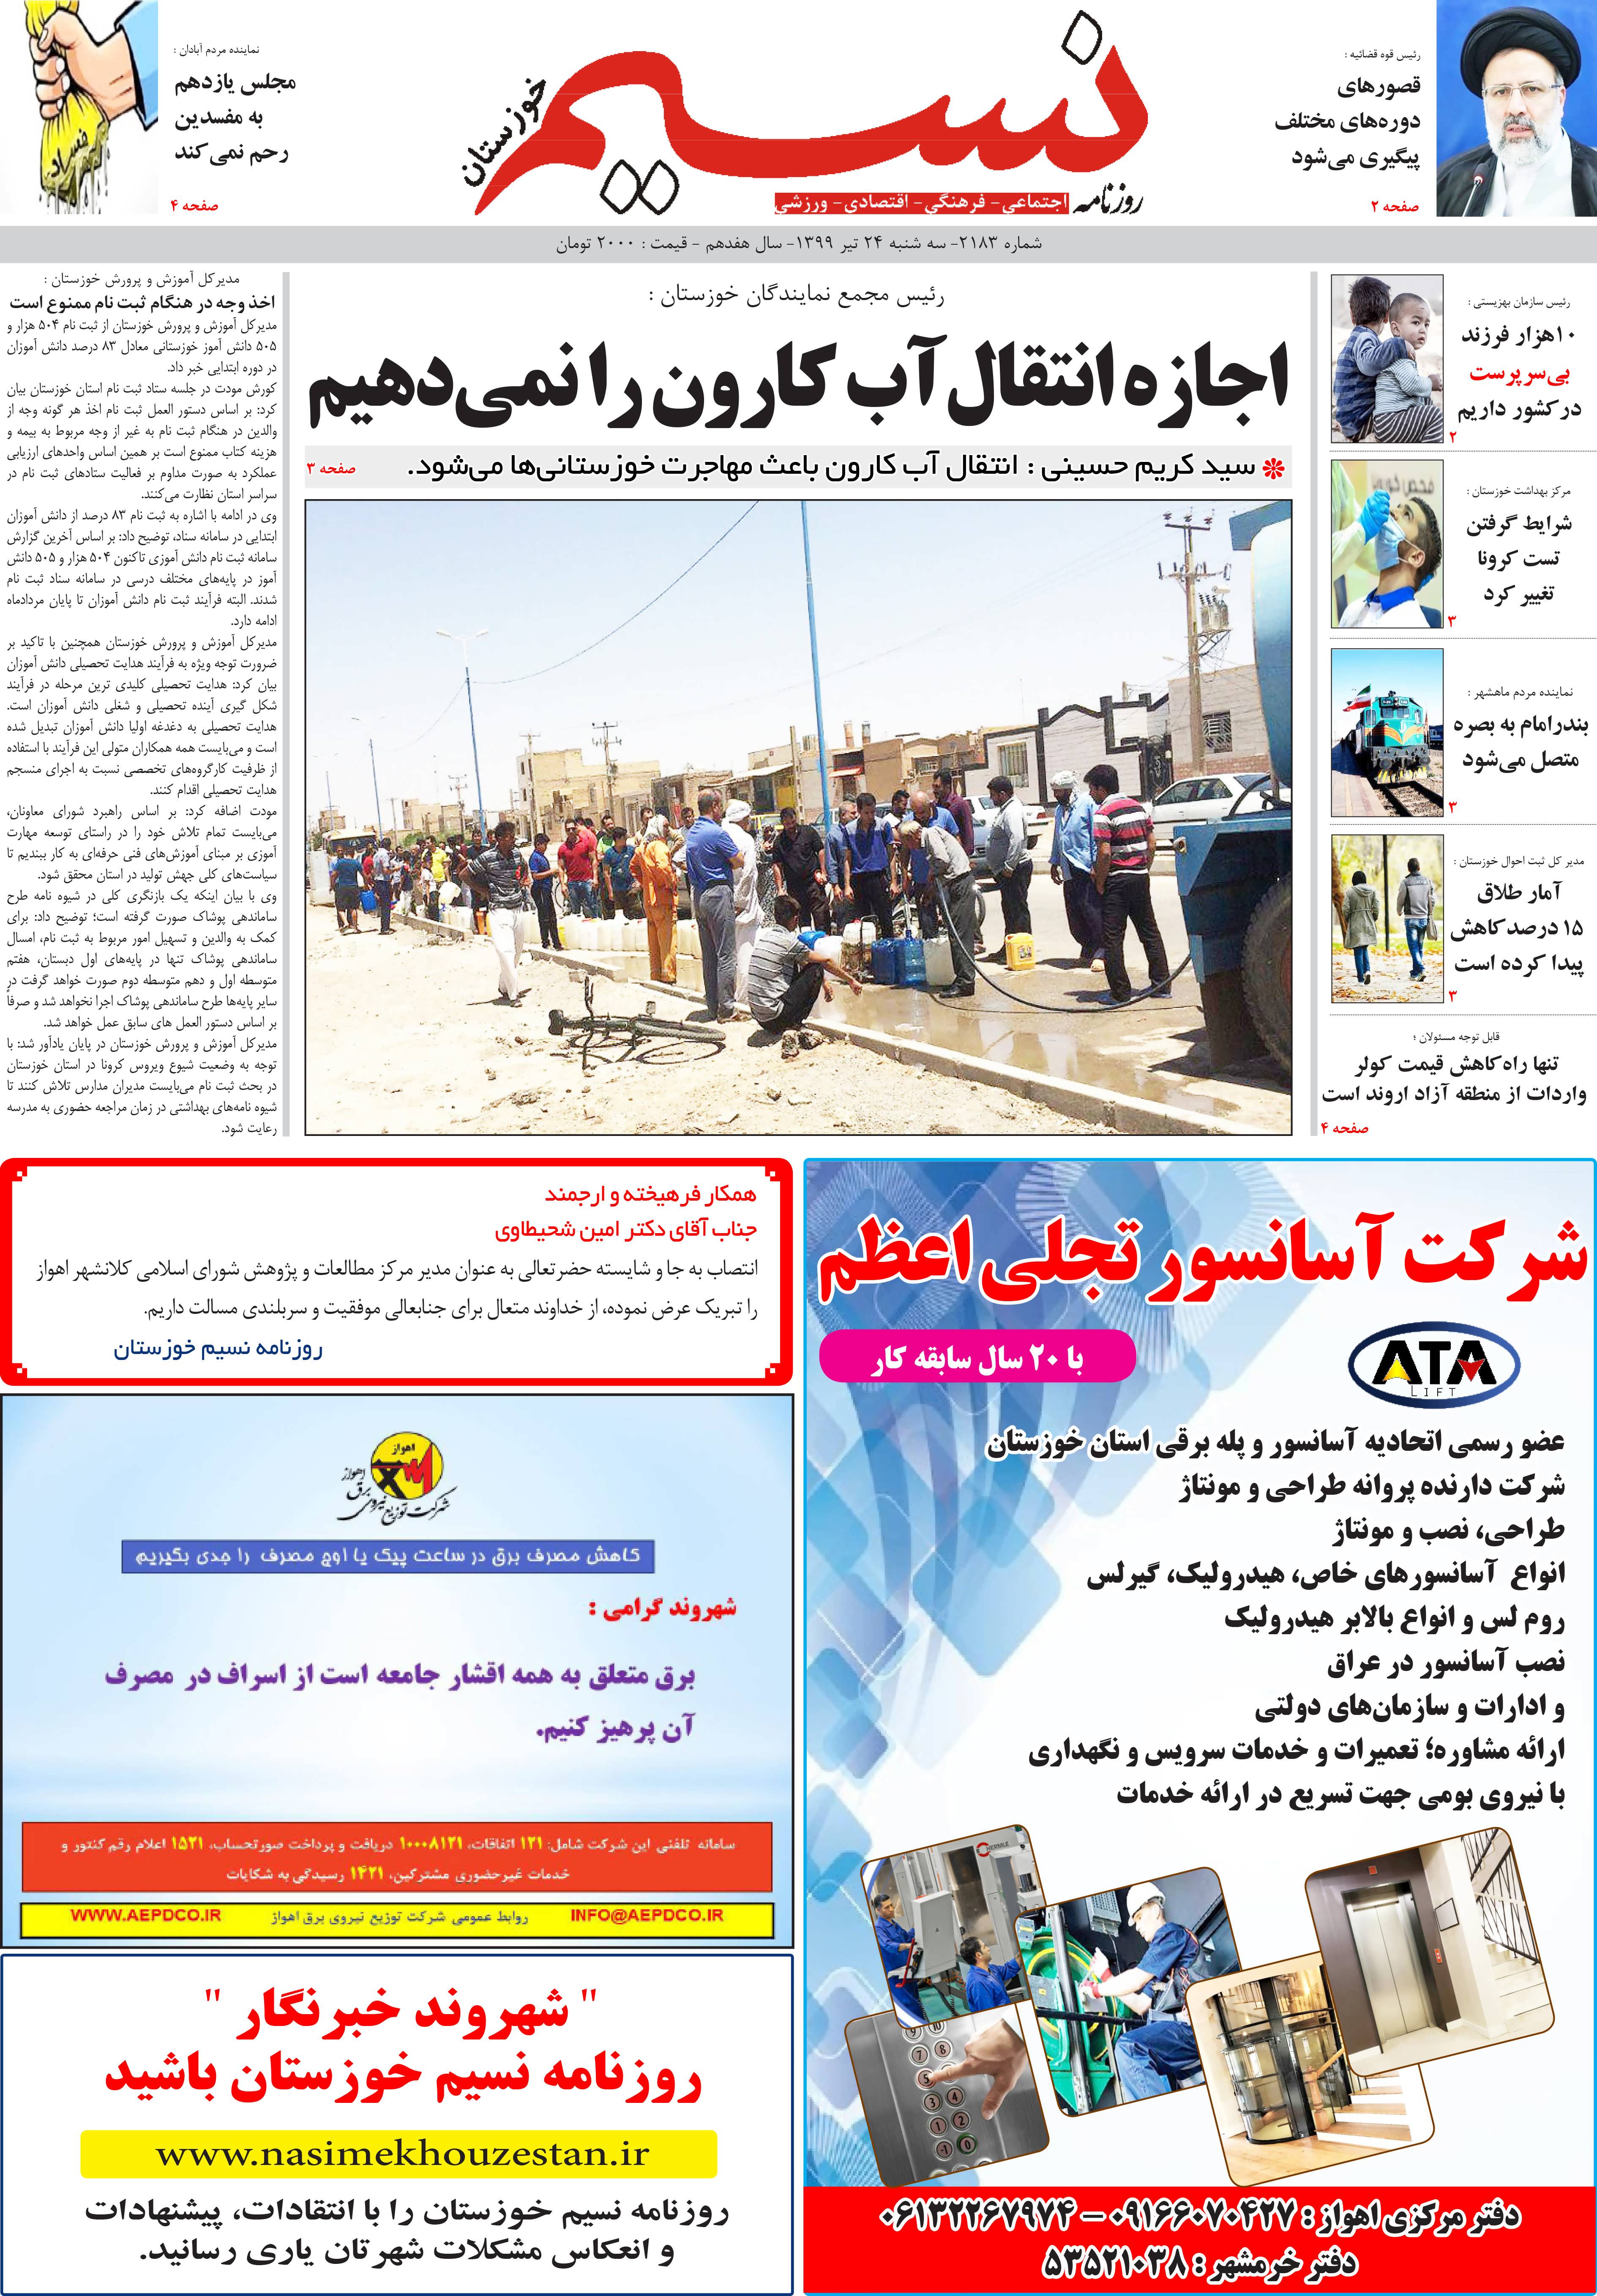 صفحه اصلی روزنامه نسیم شماره 2183 